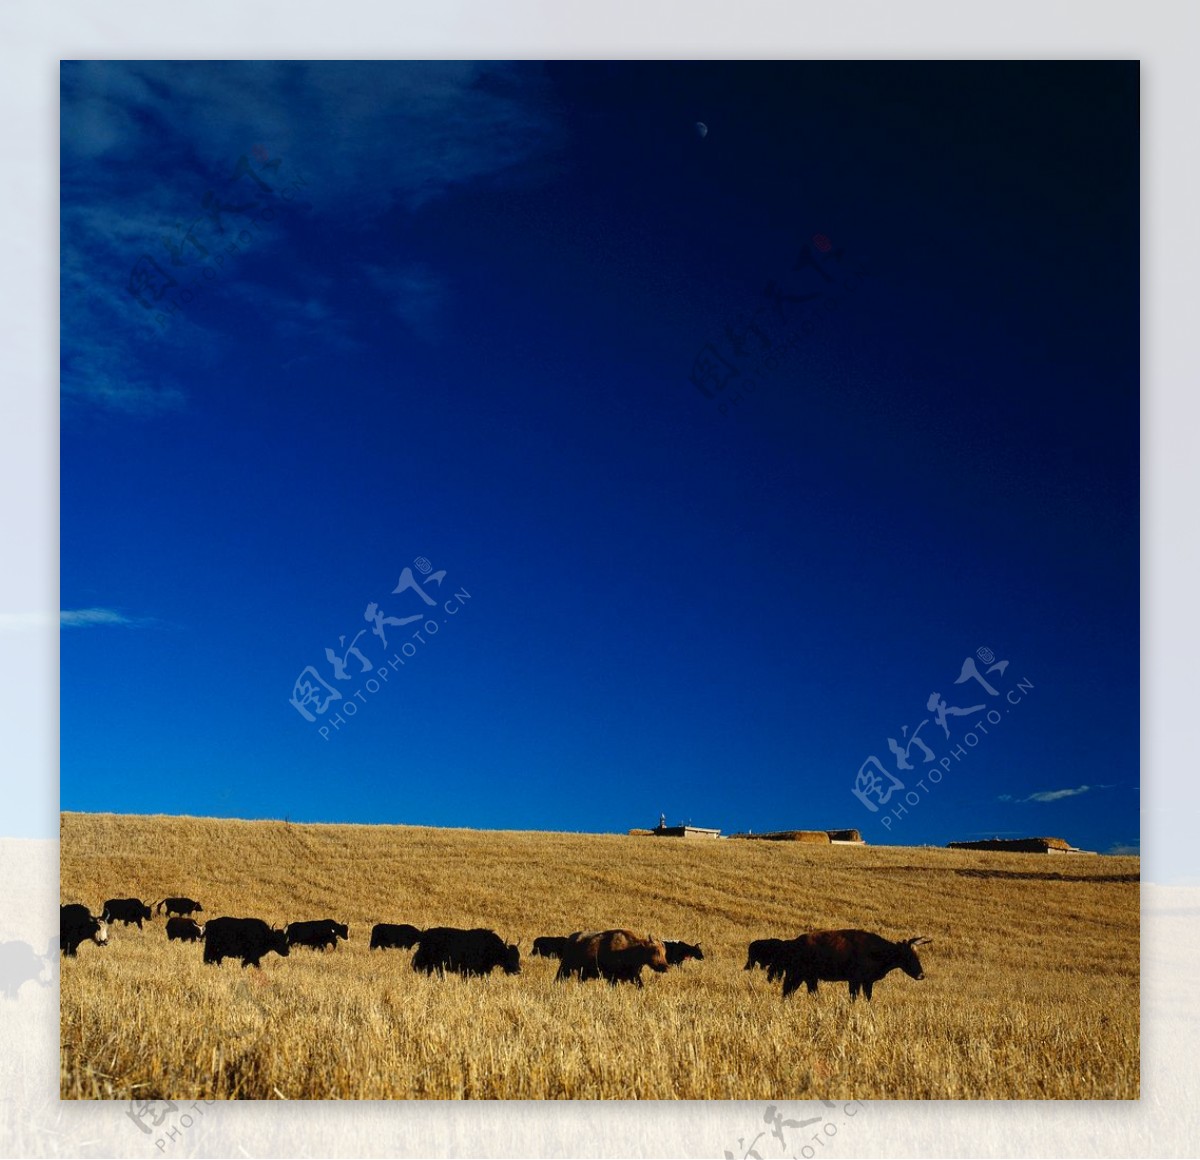 蓝天下的牛群